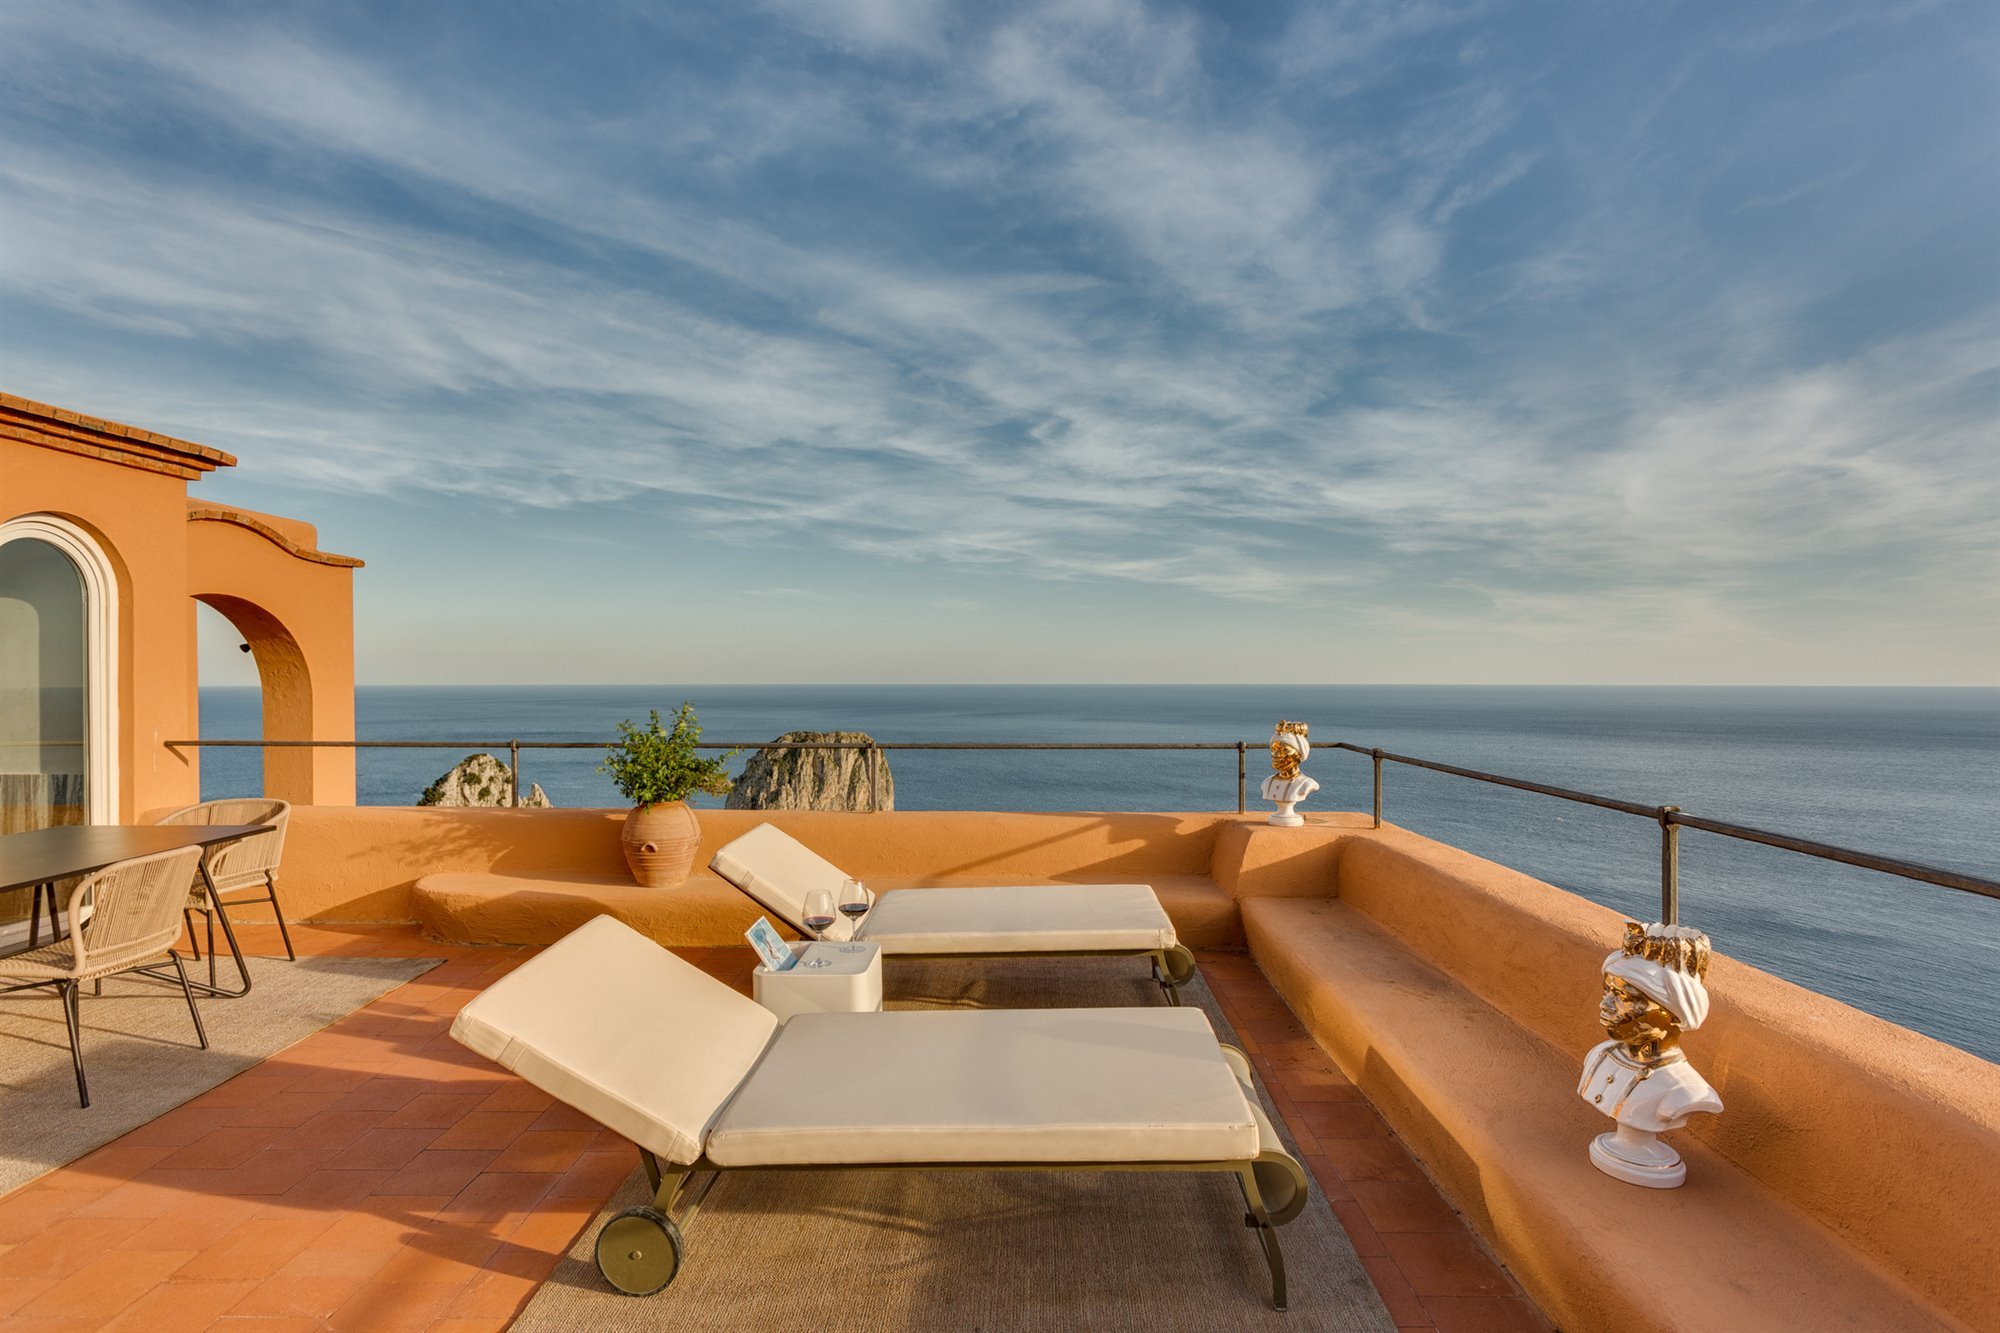 Hotel punta Tragara en Capri de lE Corbusier terraza con tumbonas